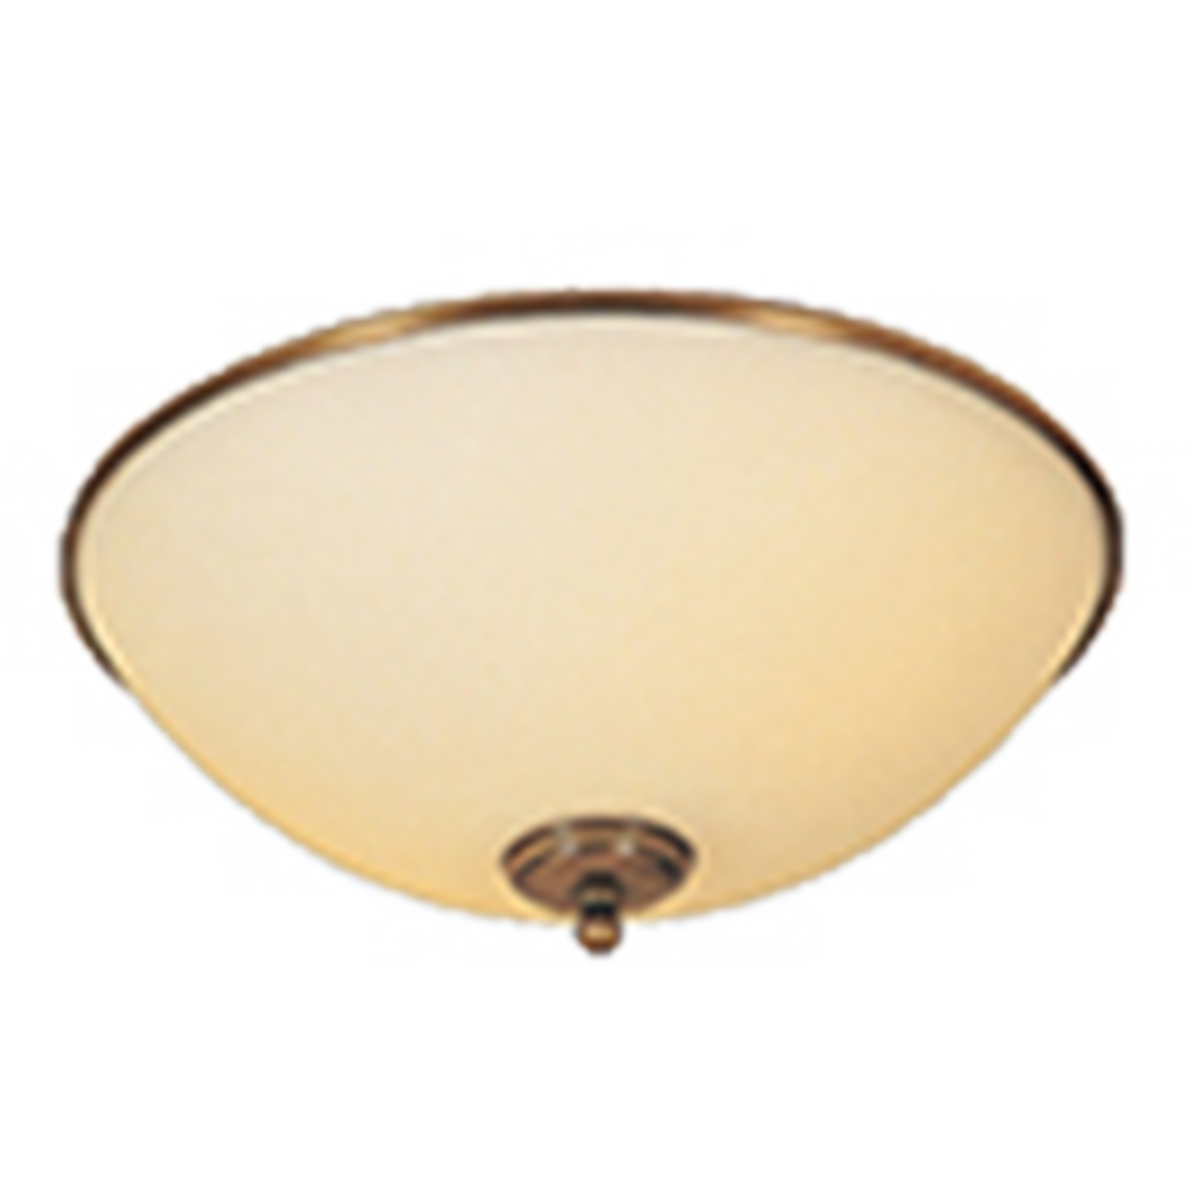 Leuchtenglas rund Opal weiß mit Messing Ring, GHR30/10-520, D=30cm, E27 Ersatzglas